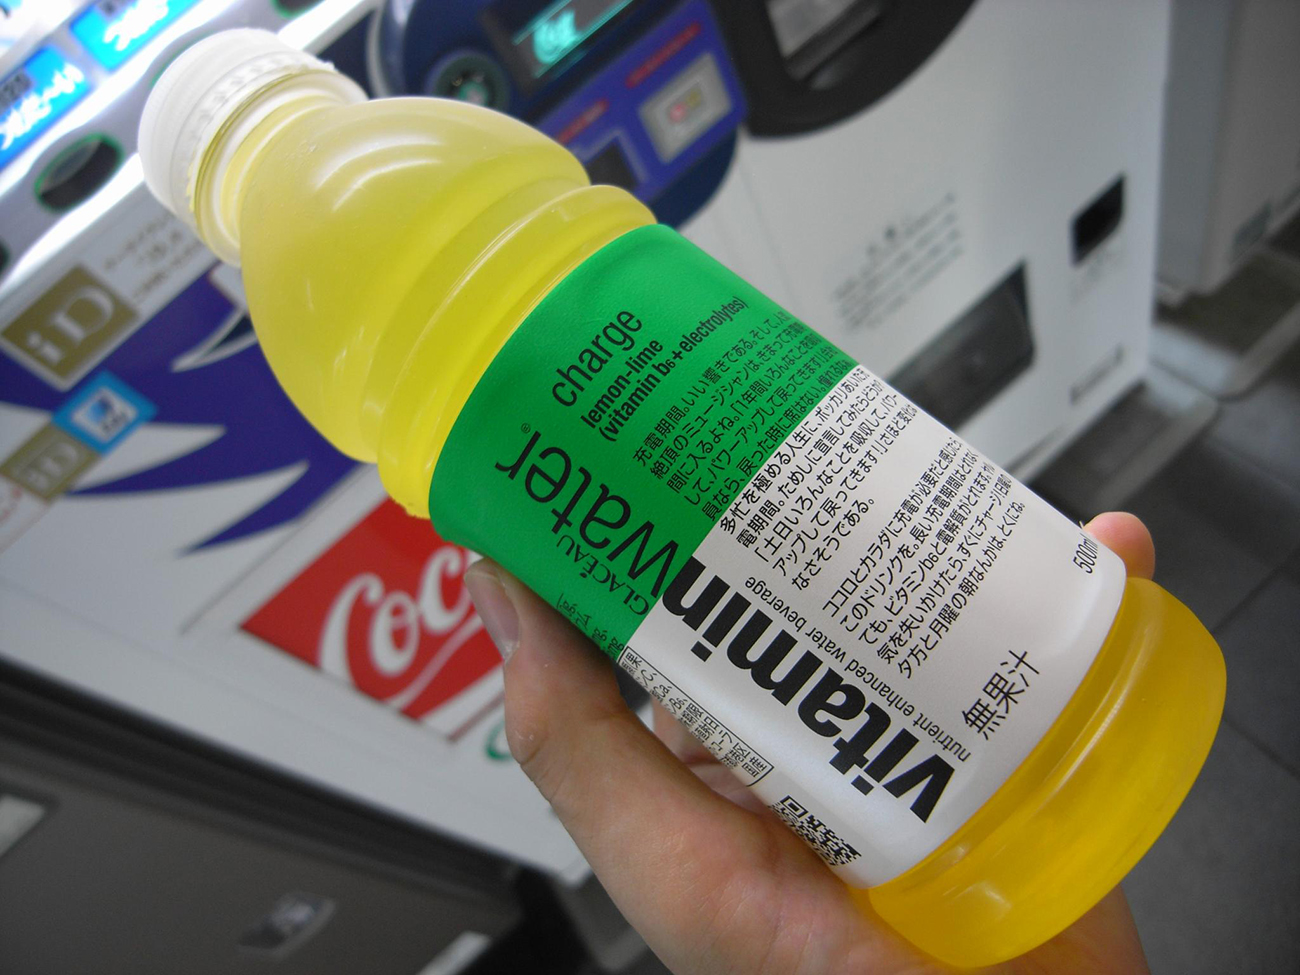 Uma fotografia mostra uma pessoa segurando uma garrafa de água com vitaminas. O rótulo está escrito em letras em inglês e japonês.